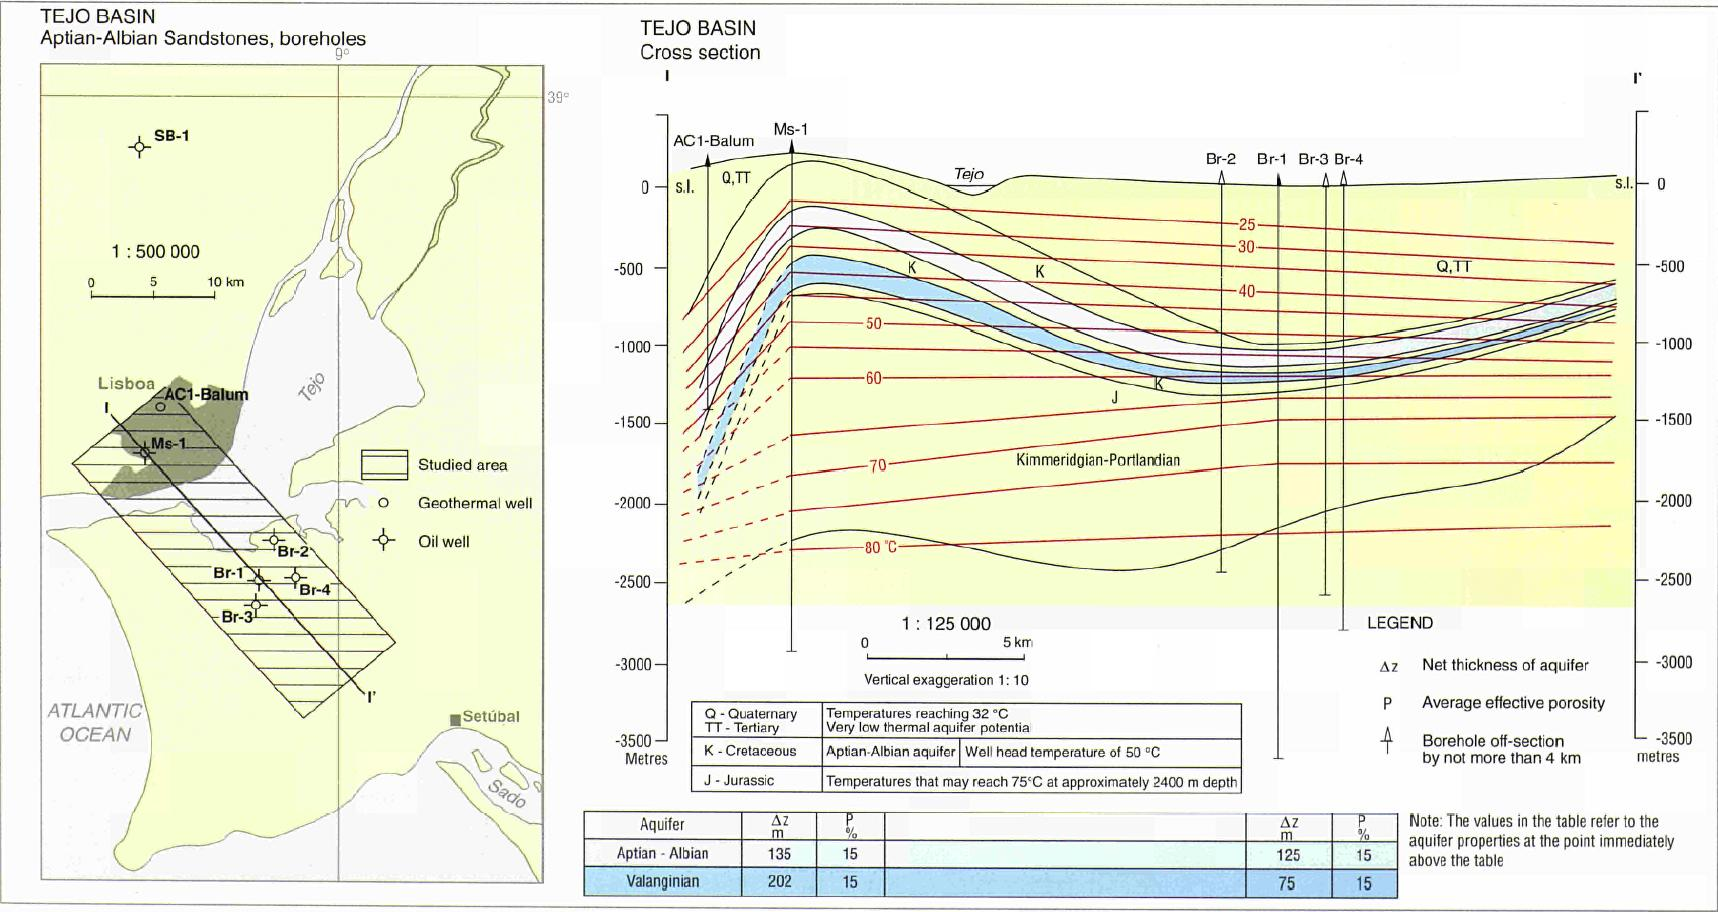 INTRODUÇÃO Evidencias do Potencial Geotérmico de Baixa Entalpia na Região de Lisboa Correia and Ramalho (2002) - Atlas of Geothermal Resources in Europe- Portugal.